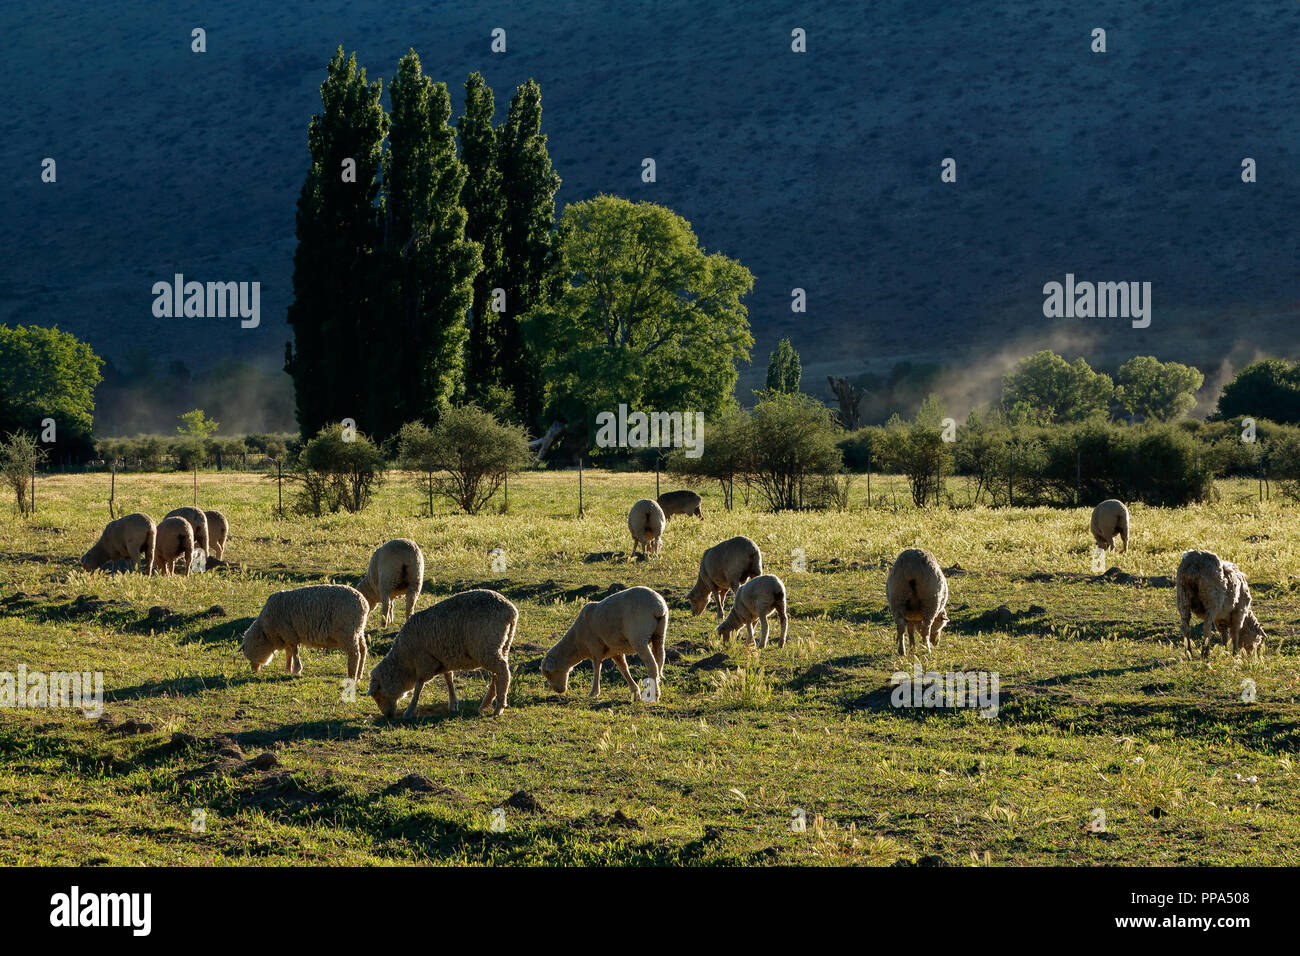 Paesaggio rurale con alberi, pascoli e pecore al pascolo nel tardo pomeriggio di luce, Karoo regione, Sud Africa Foto Stock